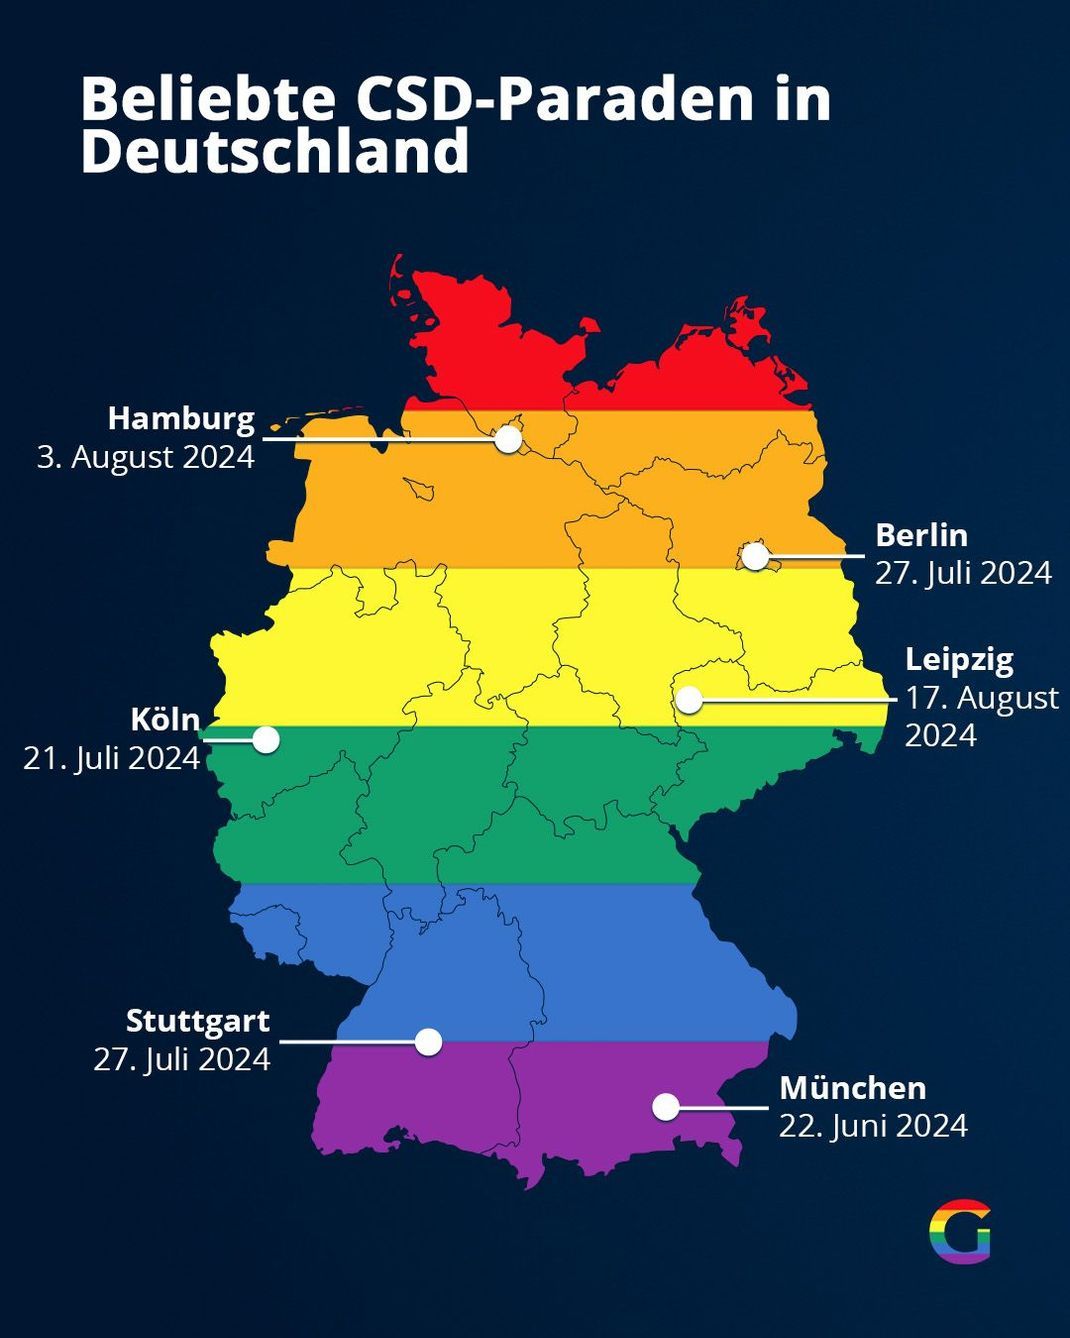 Beliebte CSD-Paraden in Deutschland